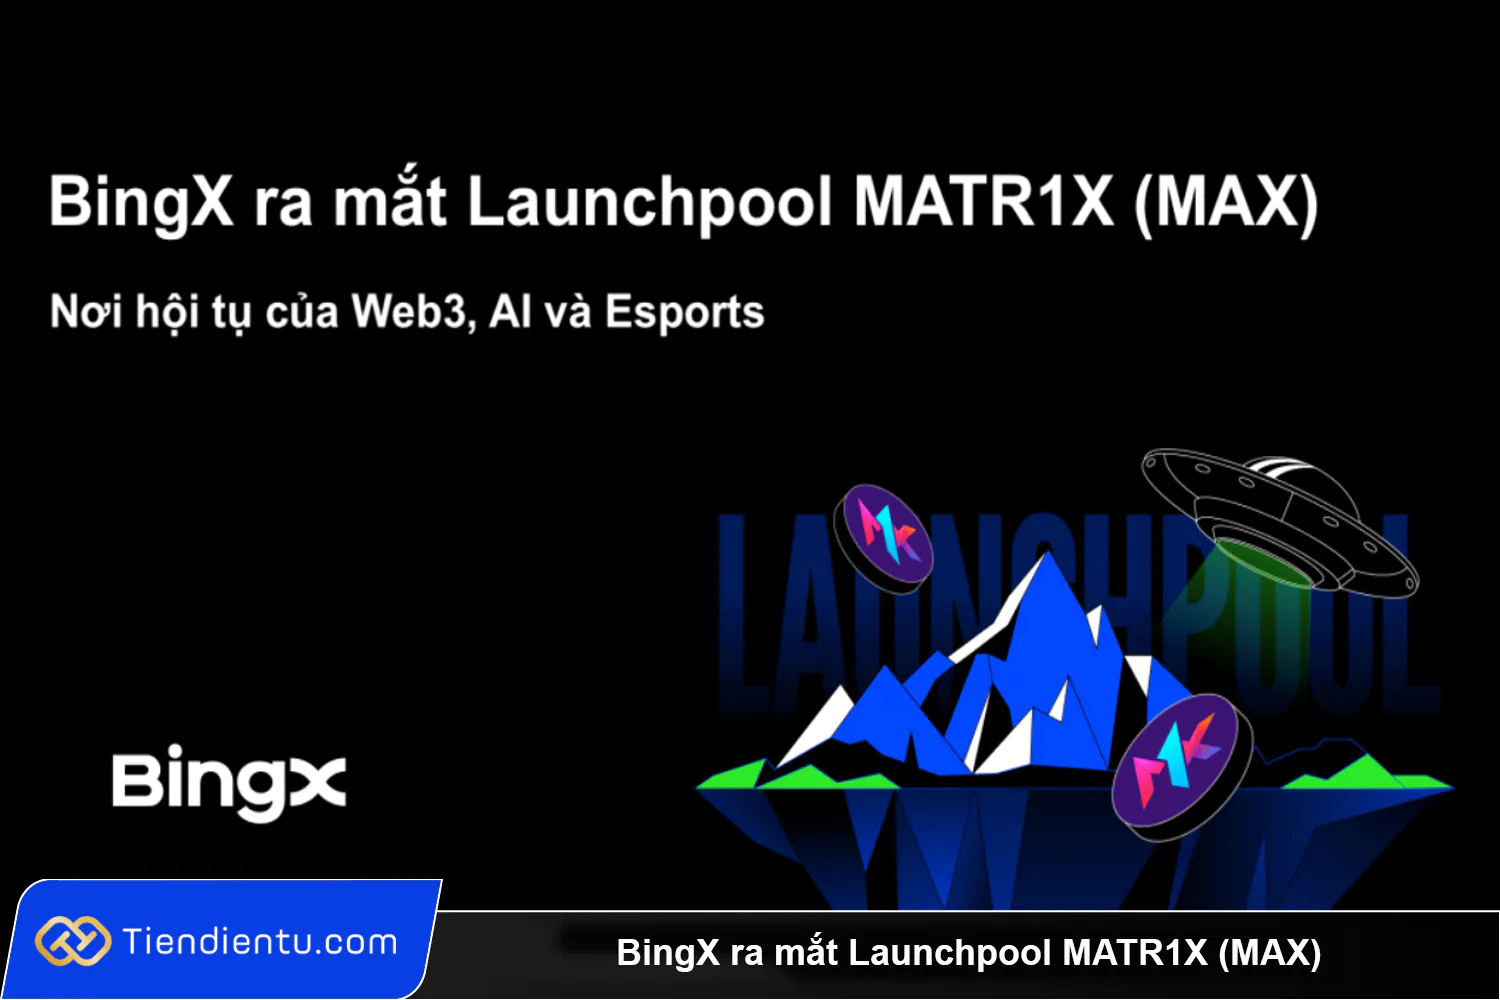 BingX ra mat Launchpool MATR1X MAX